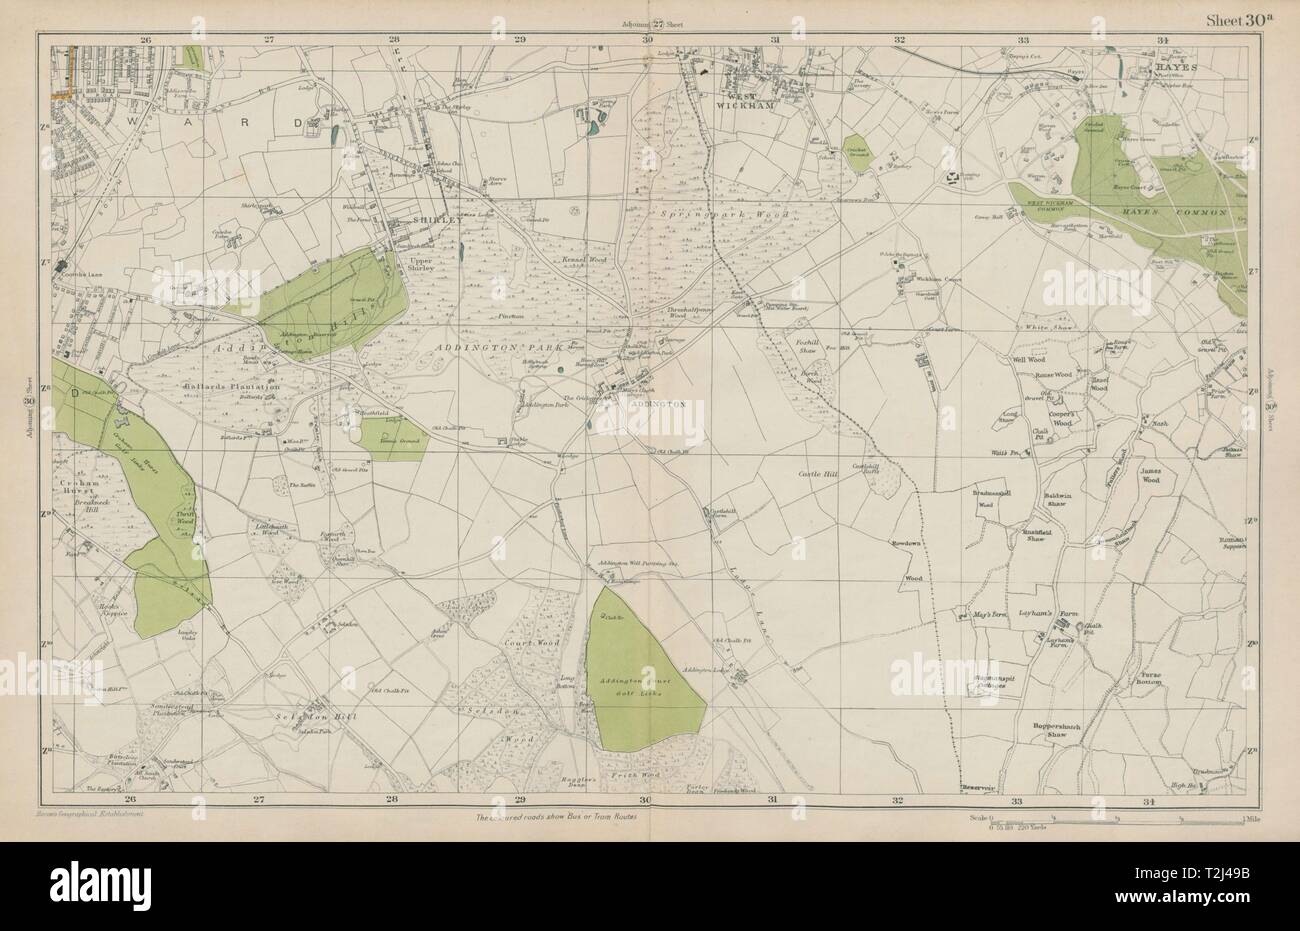 EAST CROYDON Selsdon West Wickham New Addington Hayes Shirley. BACON 1919 map Stock Photo